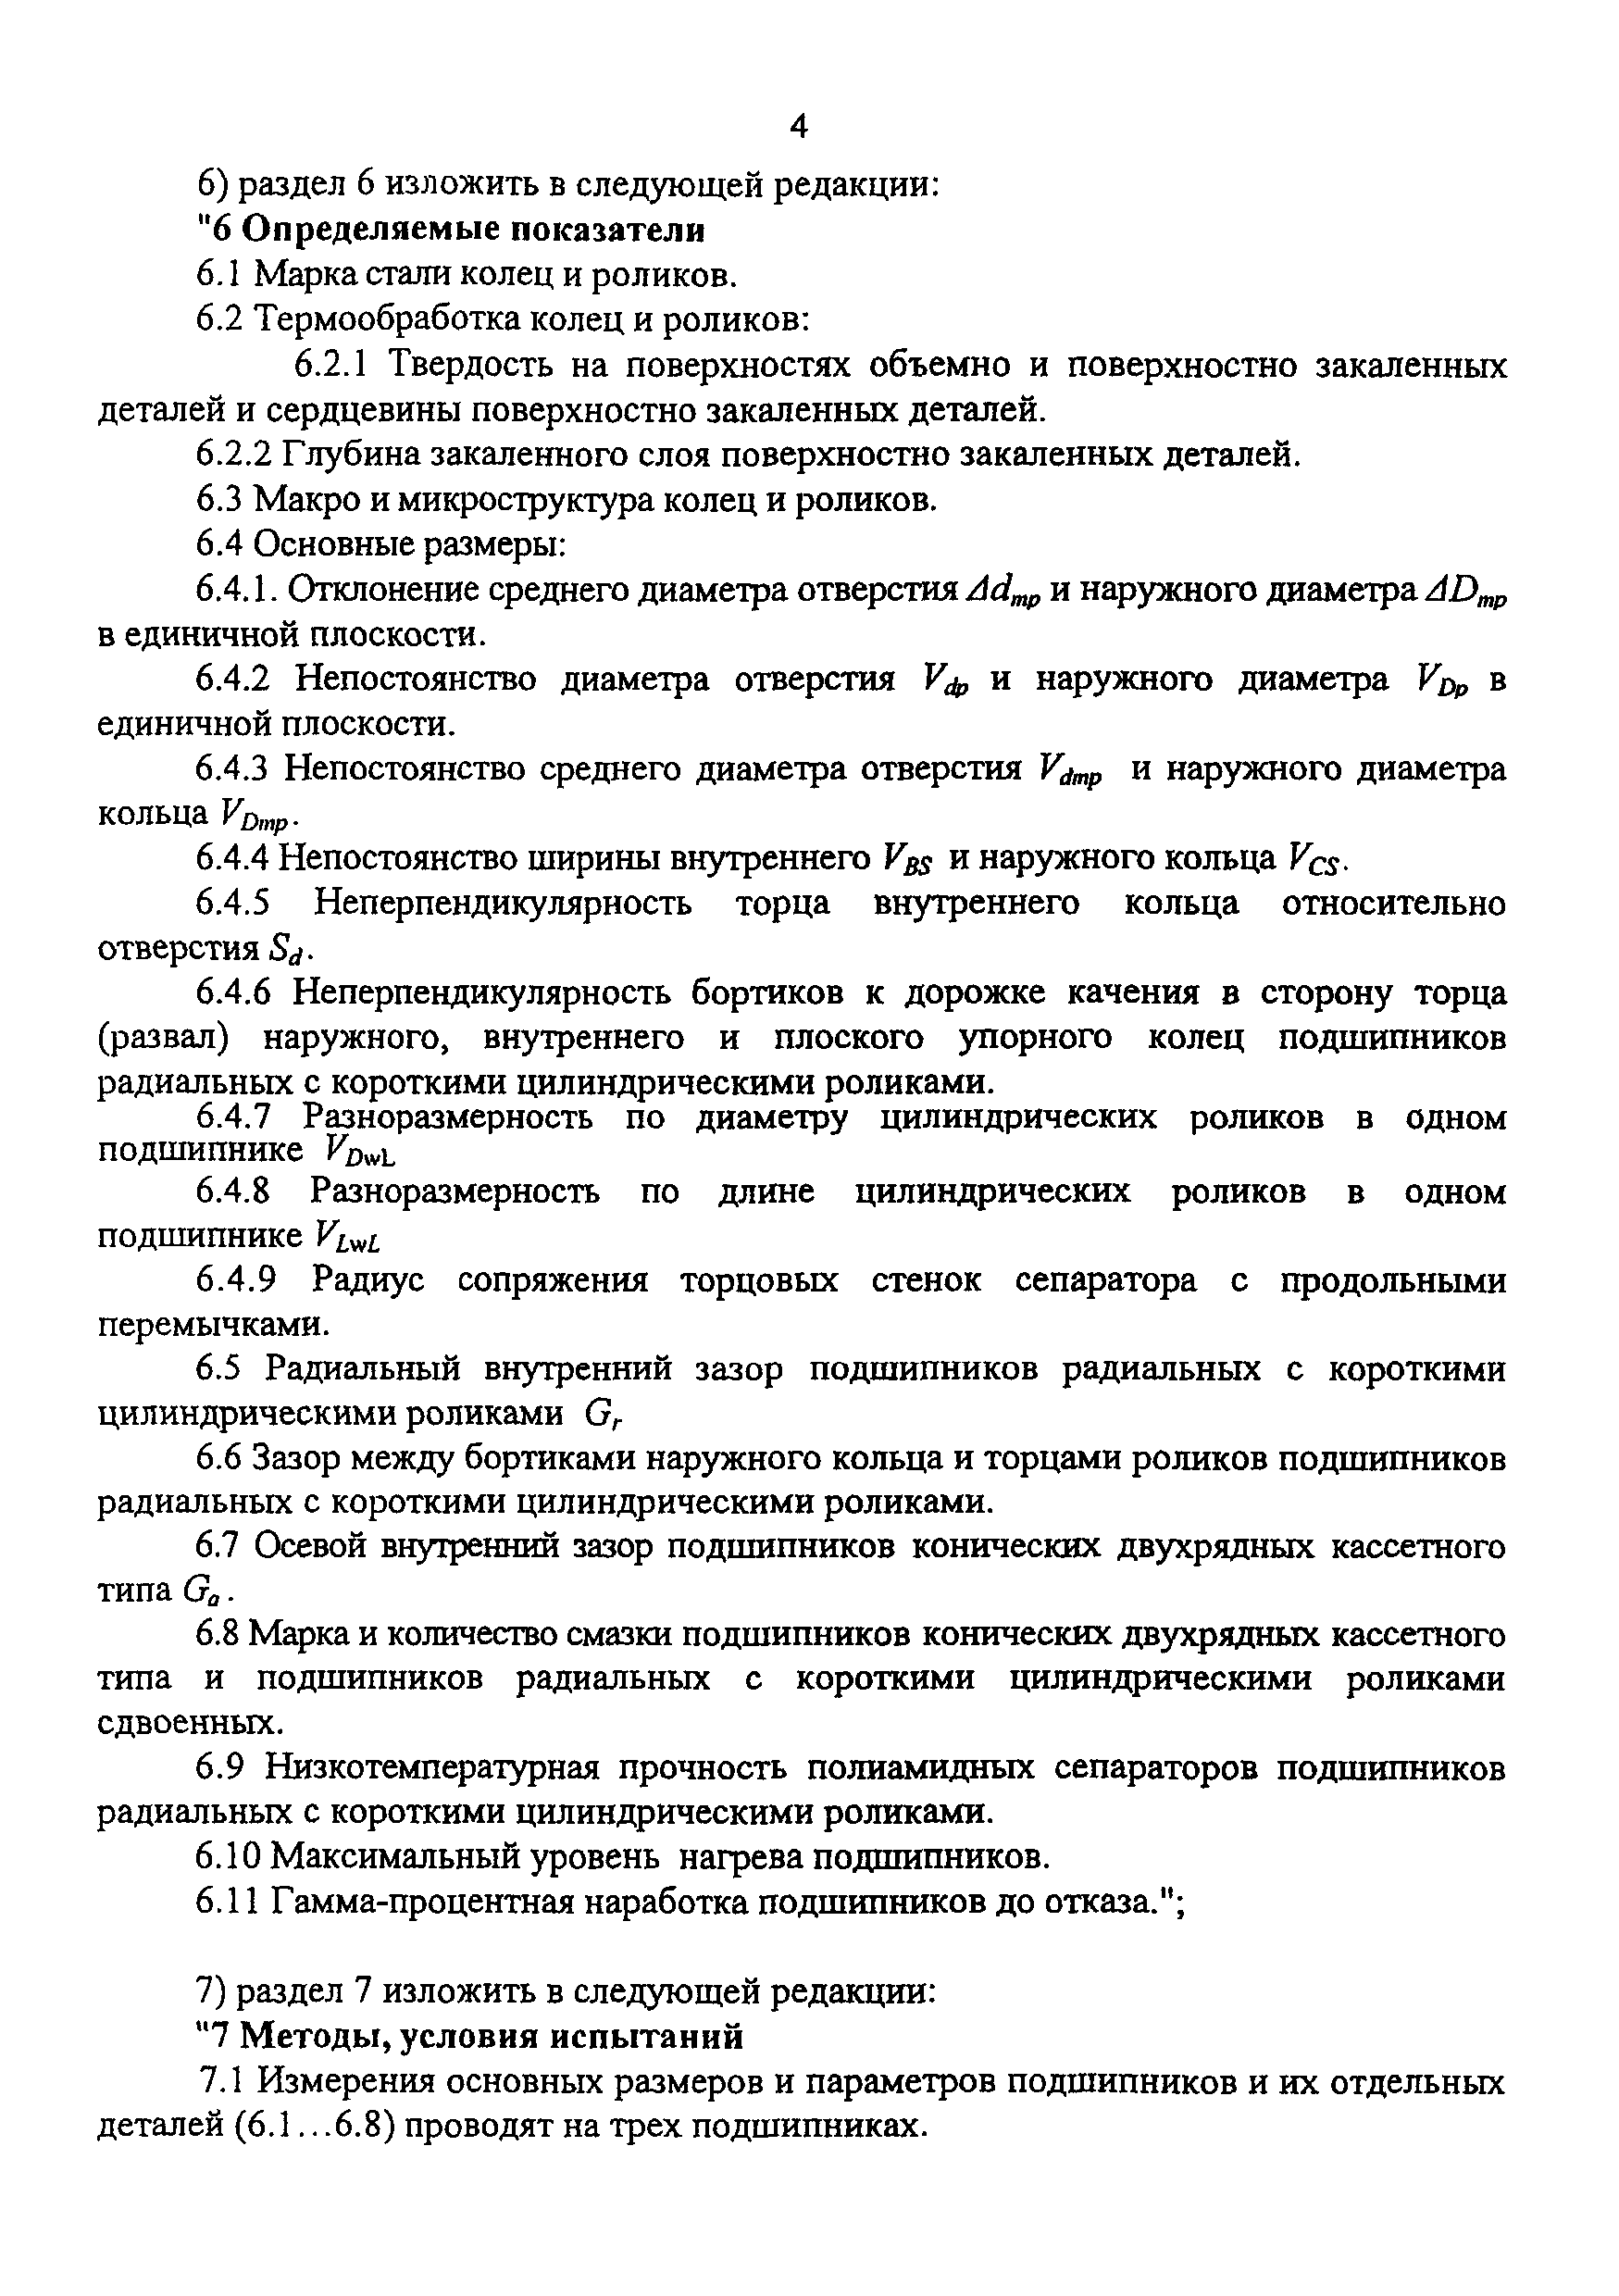 СТ ССФЖТ ЦТ ЦЛ ЦВ-137-2002